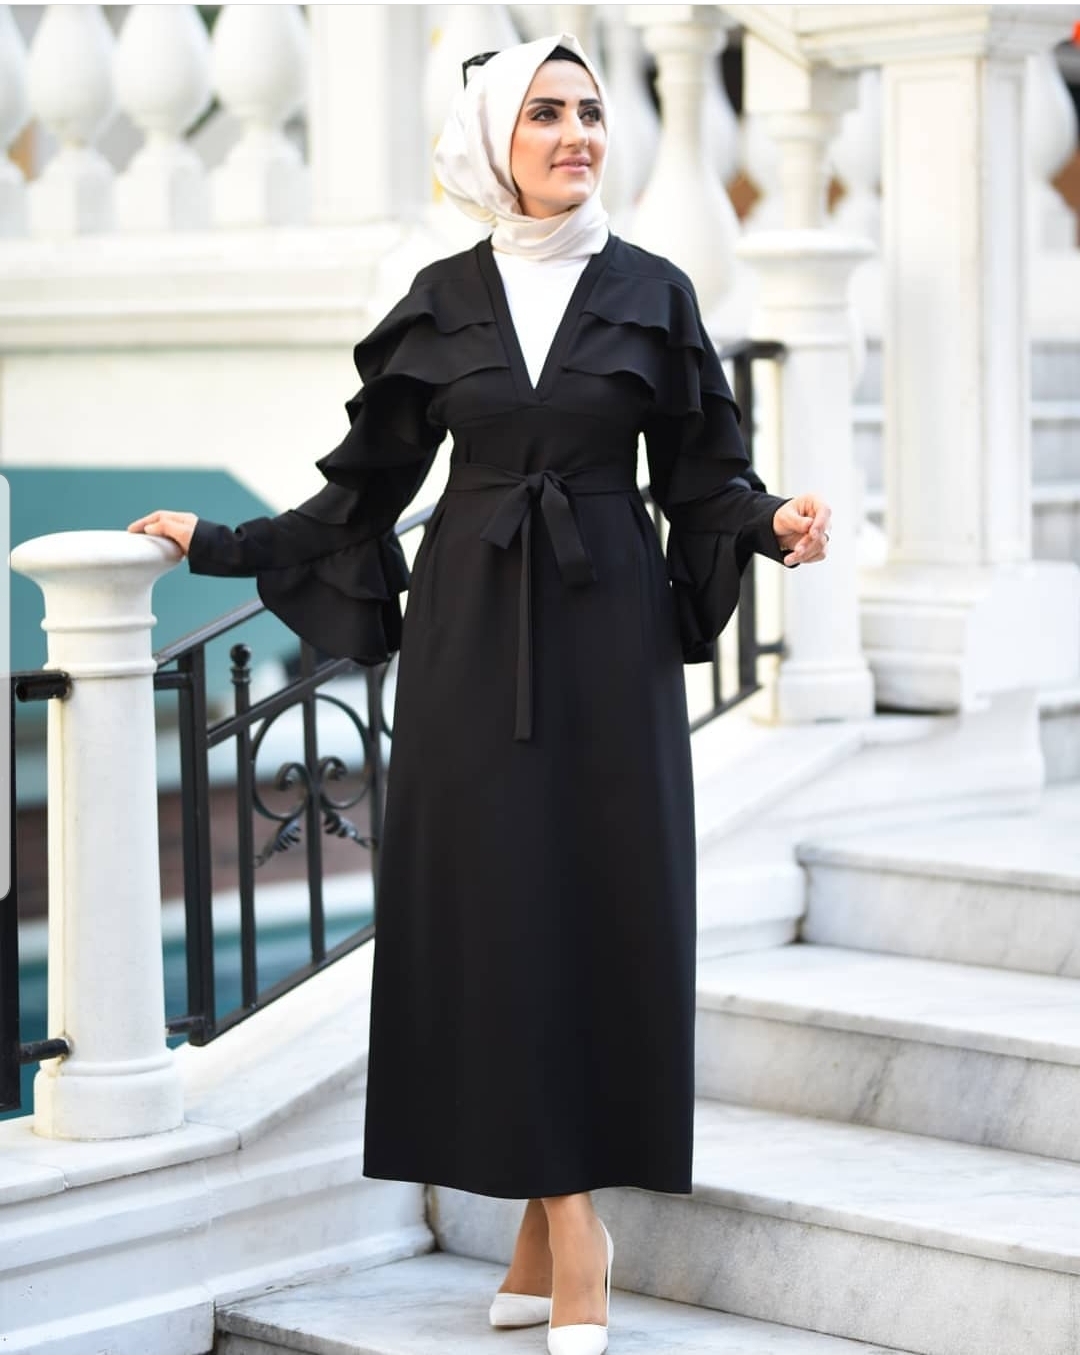 İtalyan krep v yaka fırfırlı elbise - Elfida Tesettür Elbise Modelleri  Kadın Giyim Yeni Moda Tunik Takım